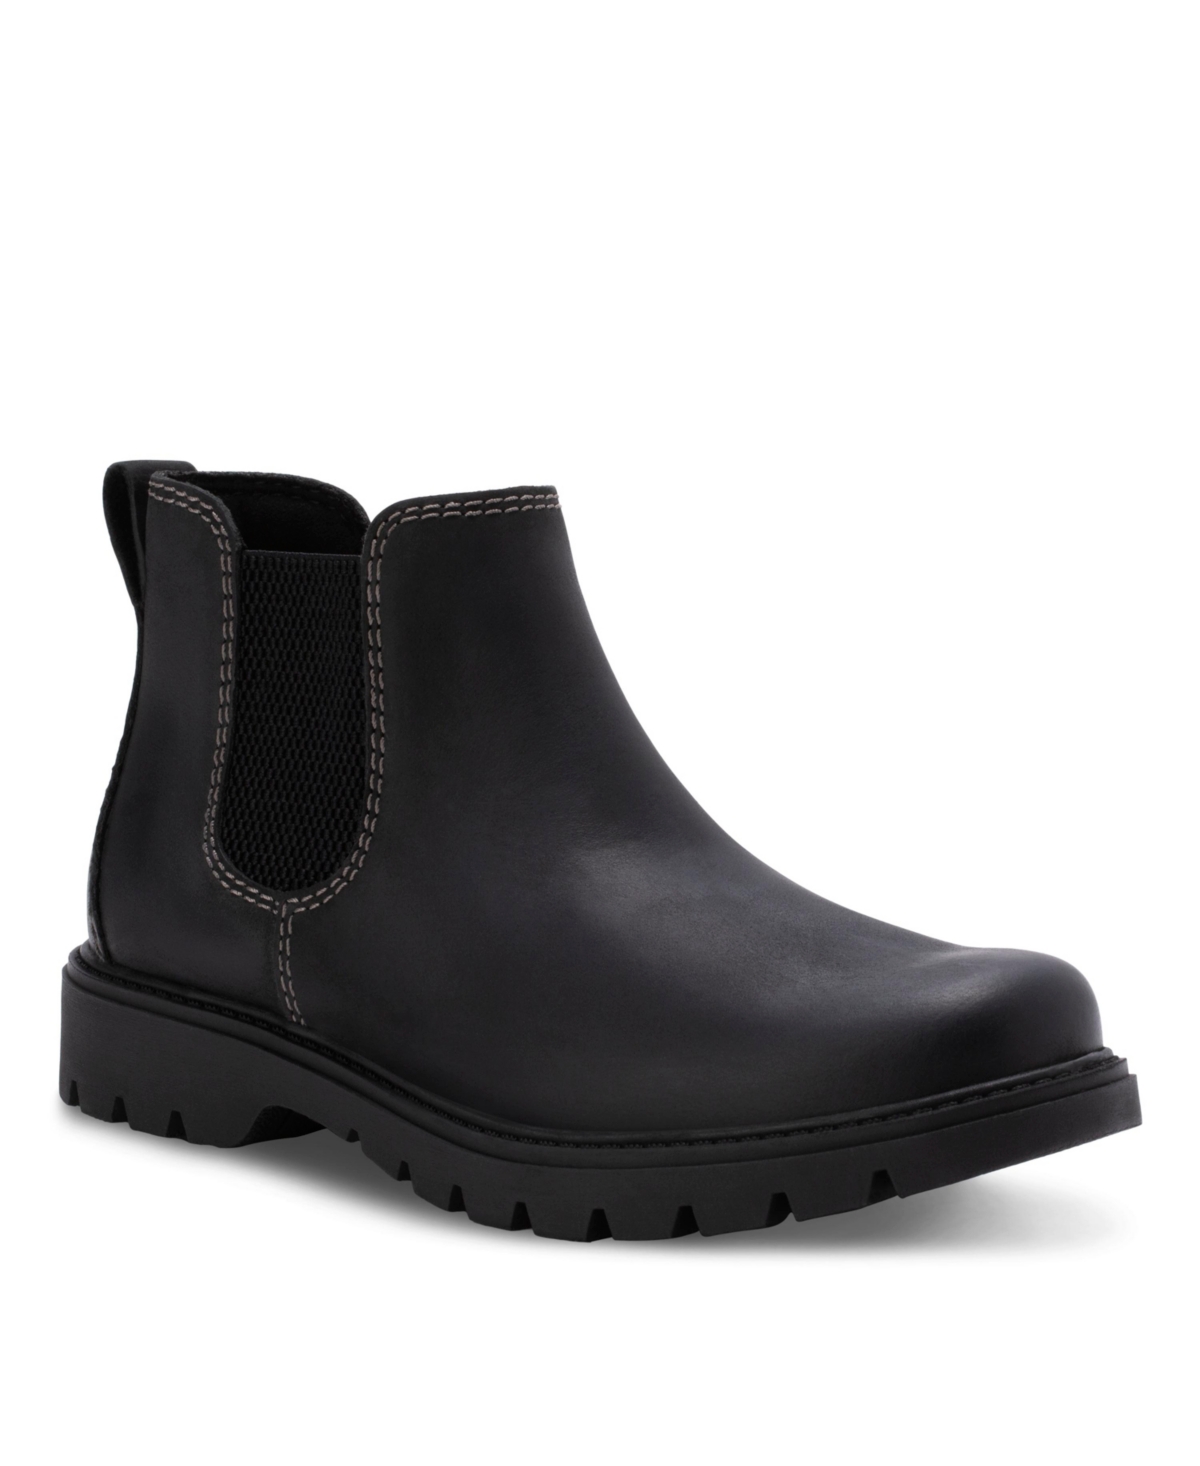 Men's Norway Chelsea Comfort Boots - Black